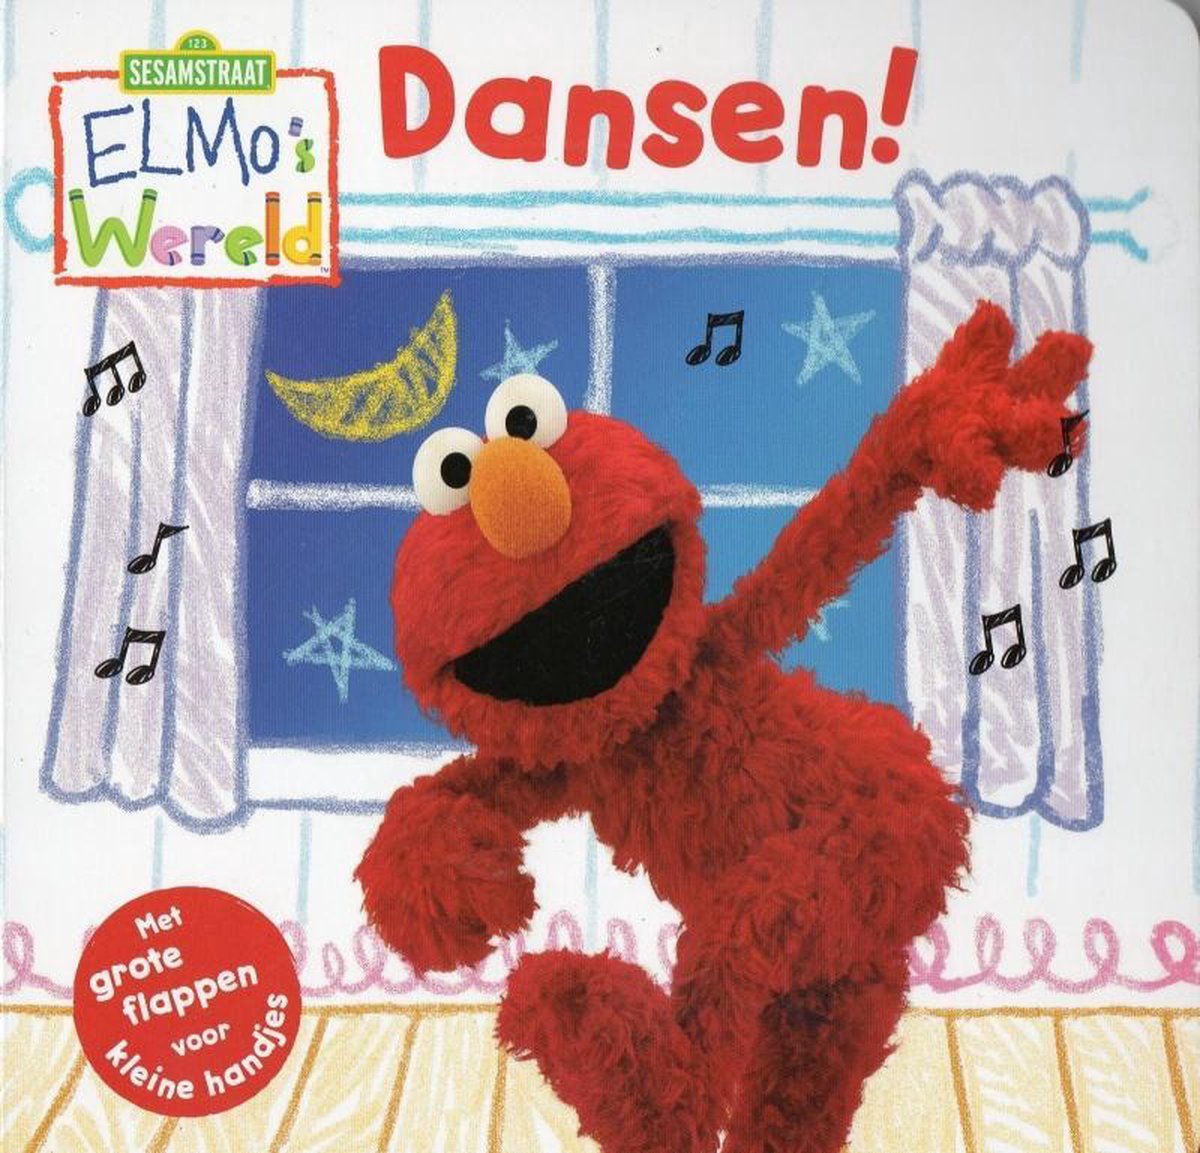 Dansen! / Elmo's Wereld